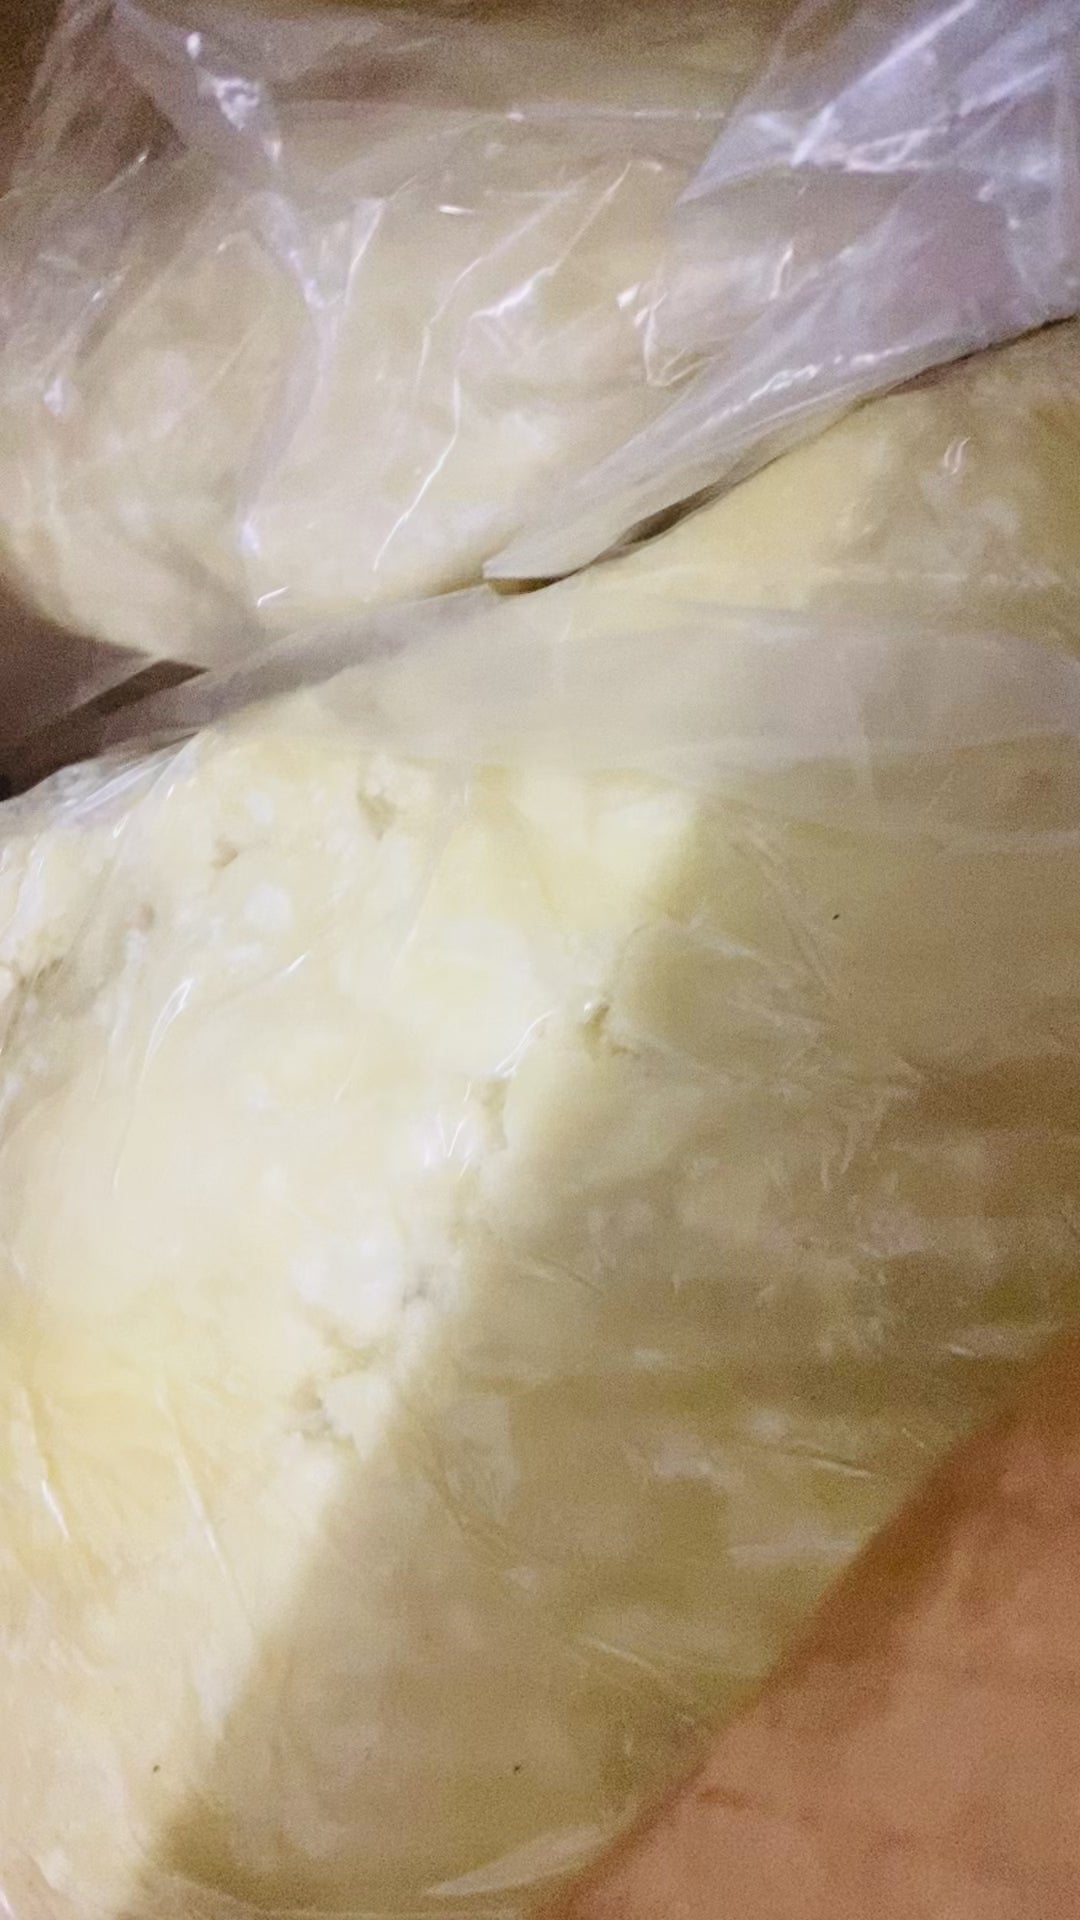 10kg Raw shea butter, pure, 100% natural, raw - raw shea butter